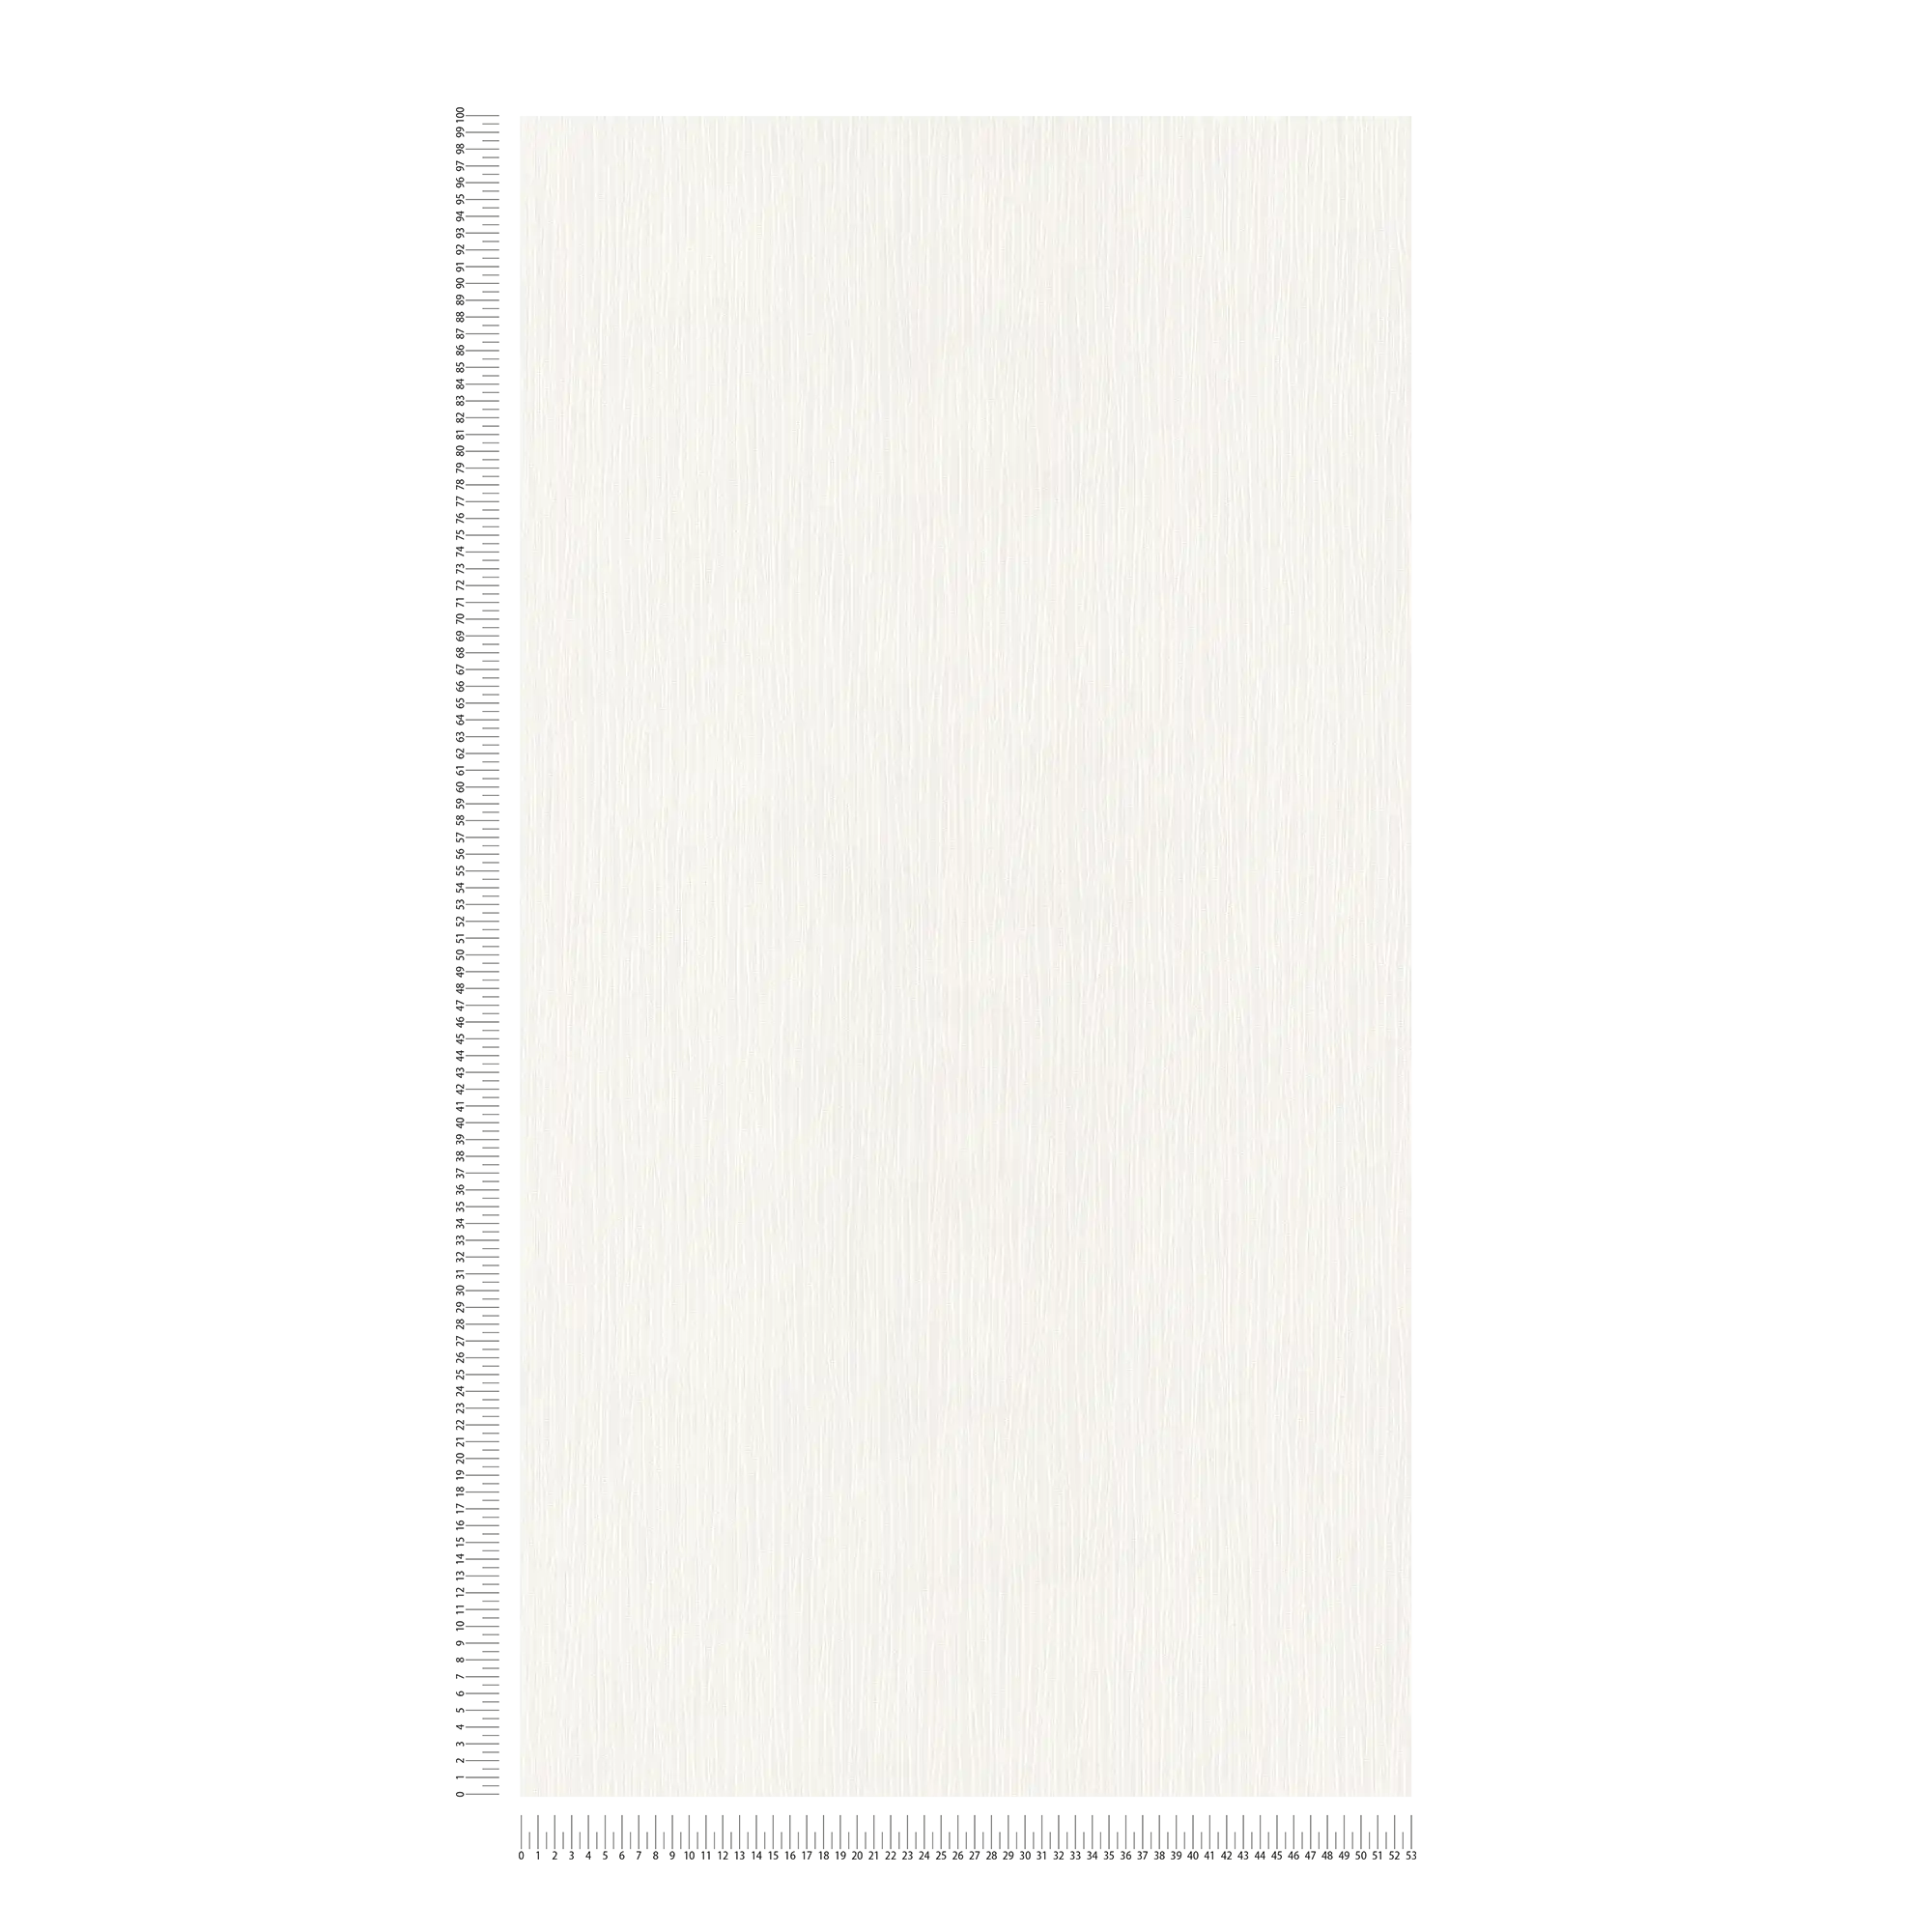             Papierbehang wit met lijnstructuur
        